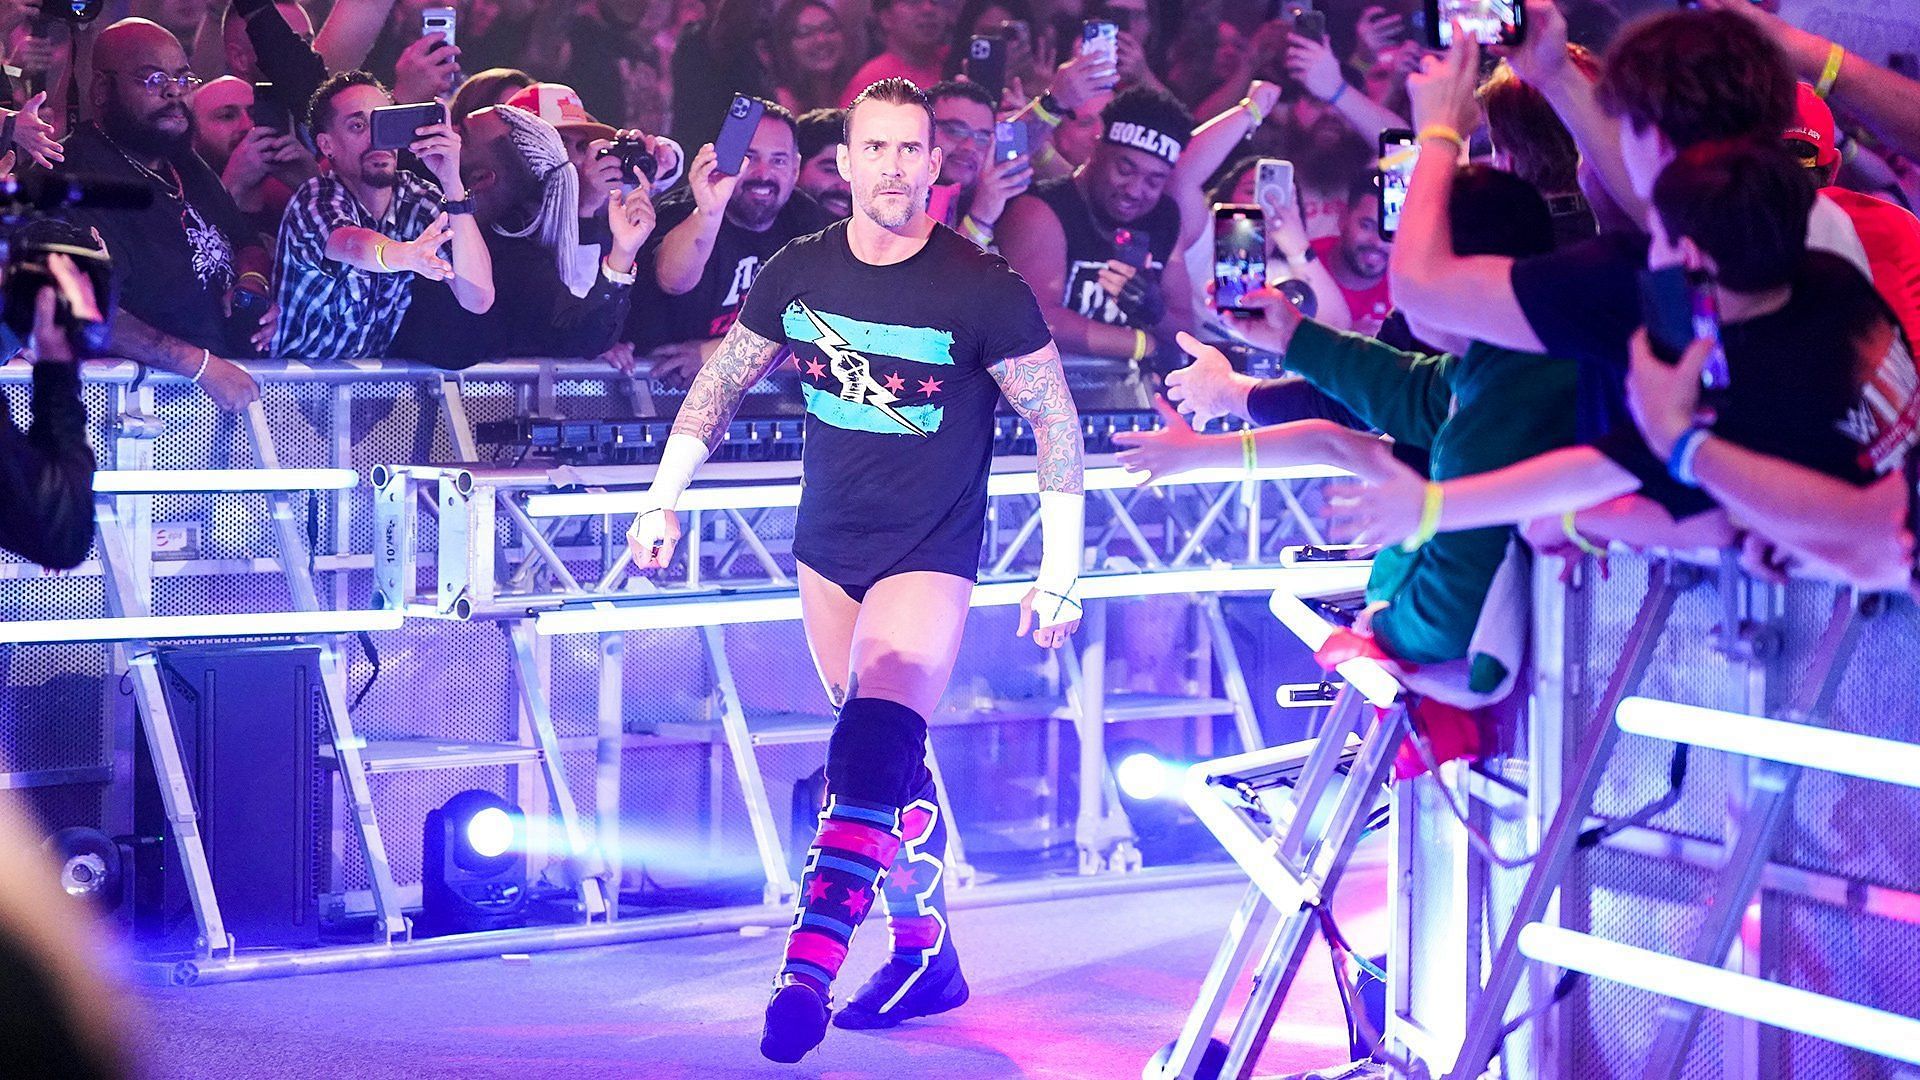 CM Punk makes his entrance at the WWE Royal Rumble